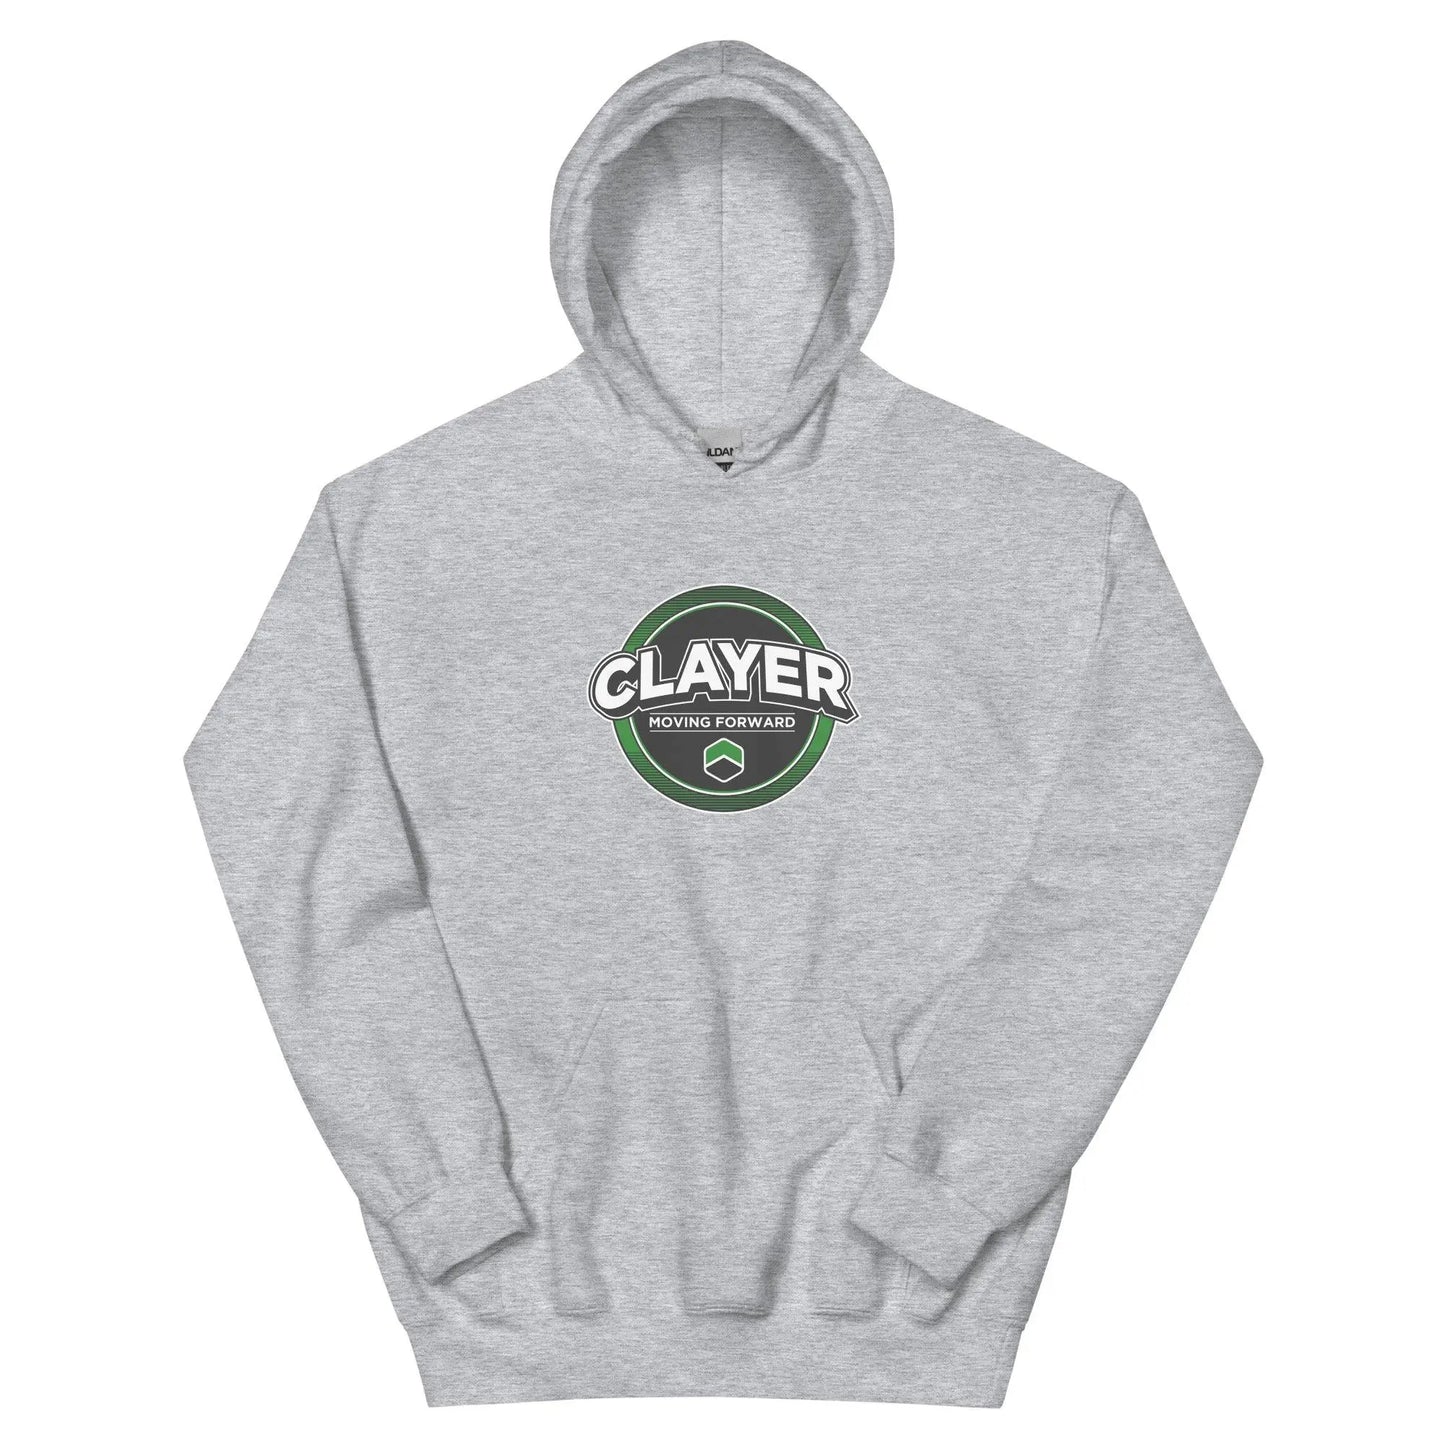 Clayer baller Sweatshirt - Unisex Hoodie - CLAYER